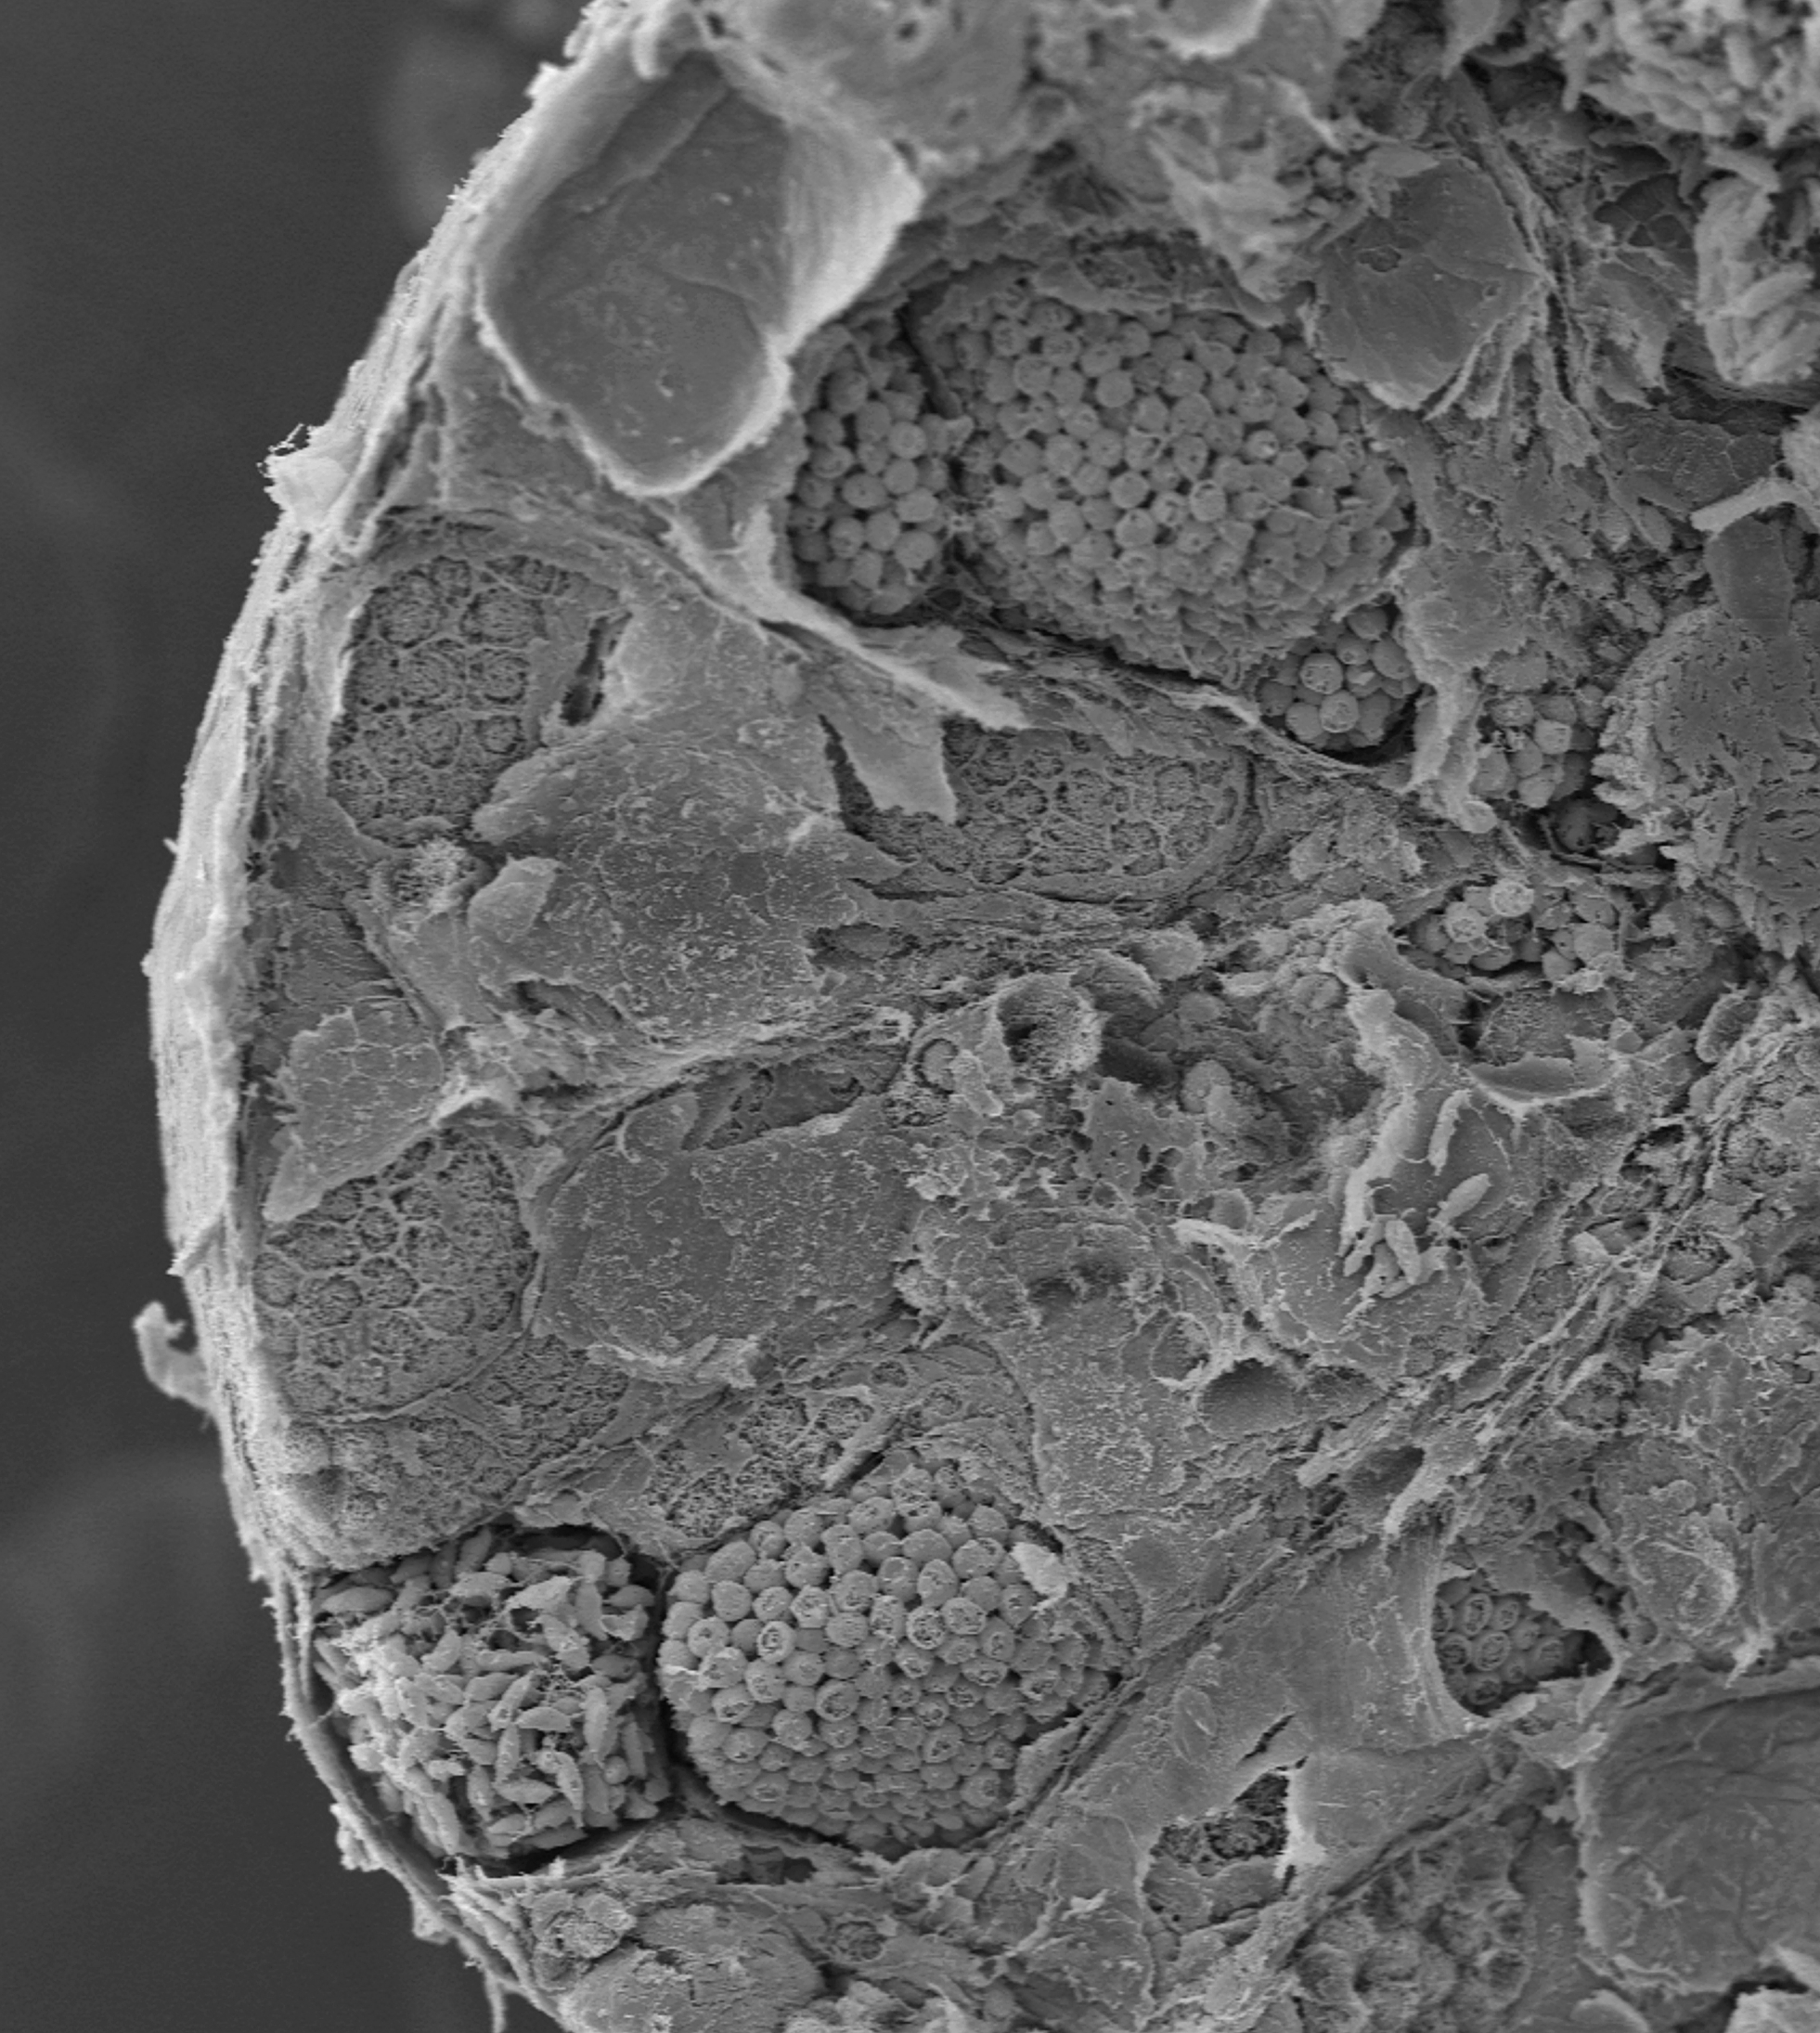 Rozłam fragmentu jądra kumaka górskiego Bombina variegata obrazujący cysty zawierające  komórki w różnych stadiach spermatogenezy